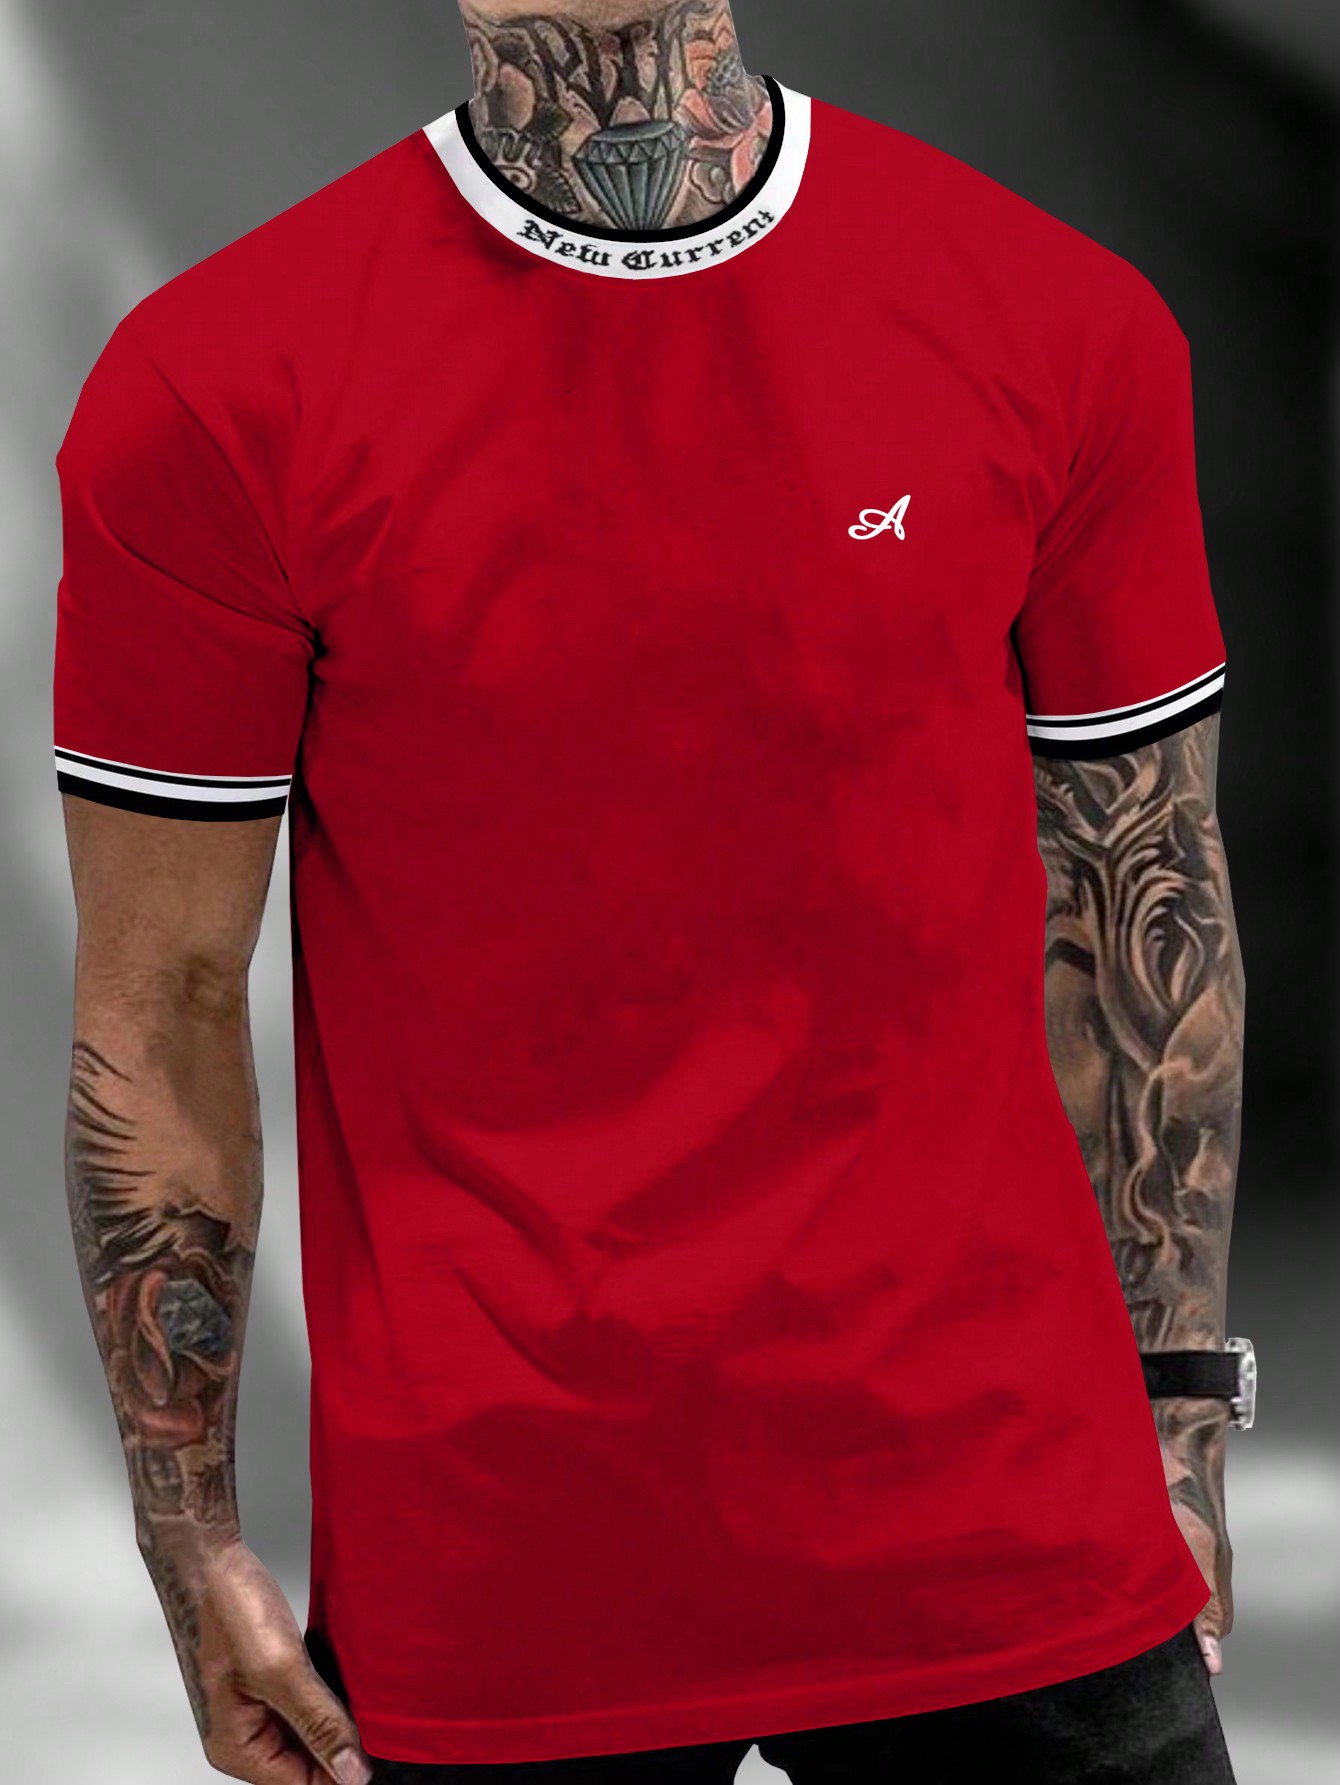 Мужская футболка с контрастным буквенным принтом Manfinity Homme и декоративной окантовкой, красный футболка мужская с контрастной отделкой madison 170 оранжевый белый размер xl